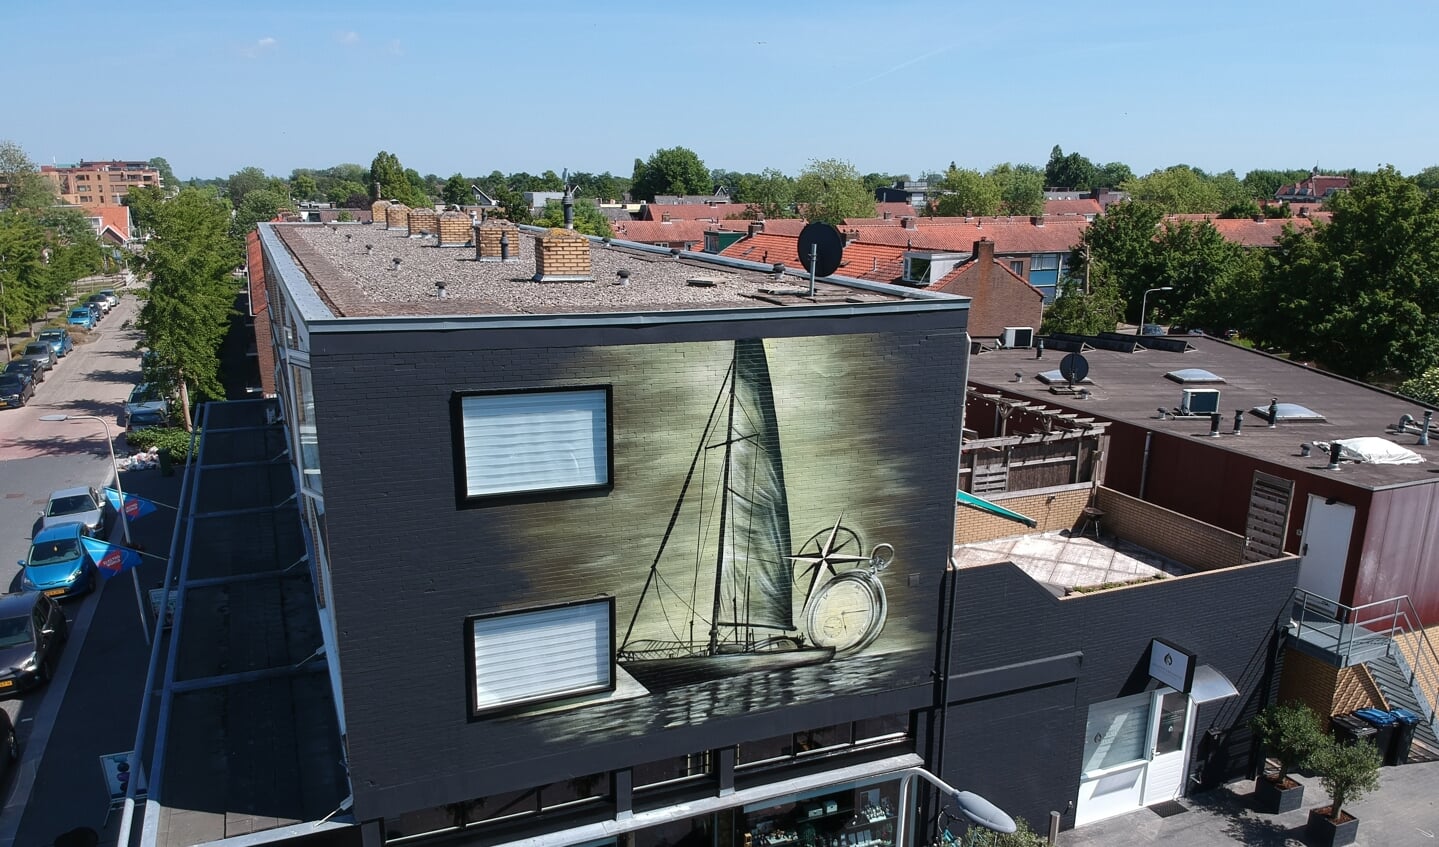 Eind mei voltooide Joost al een prachtige muurschildering van een zeilboot op het pand van Goud Gedaan.